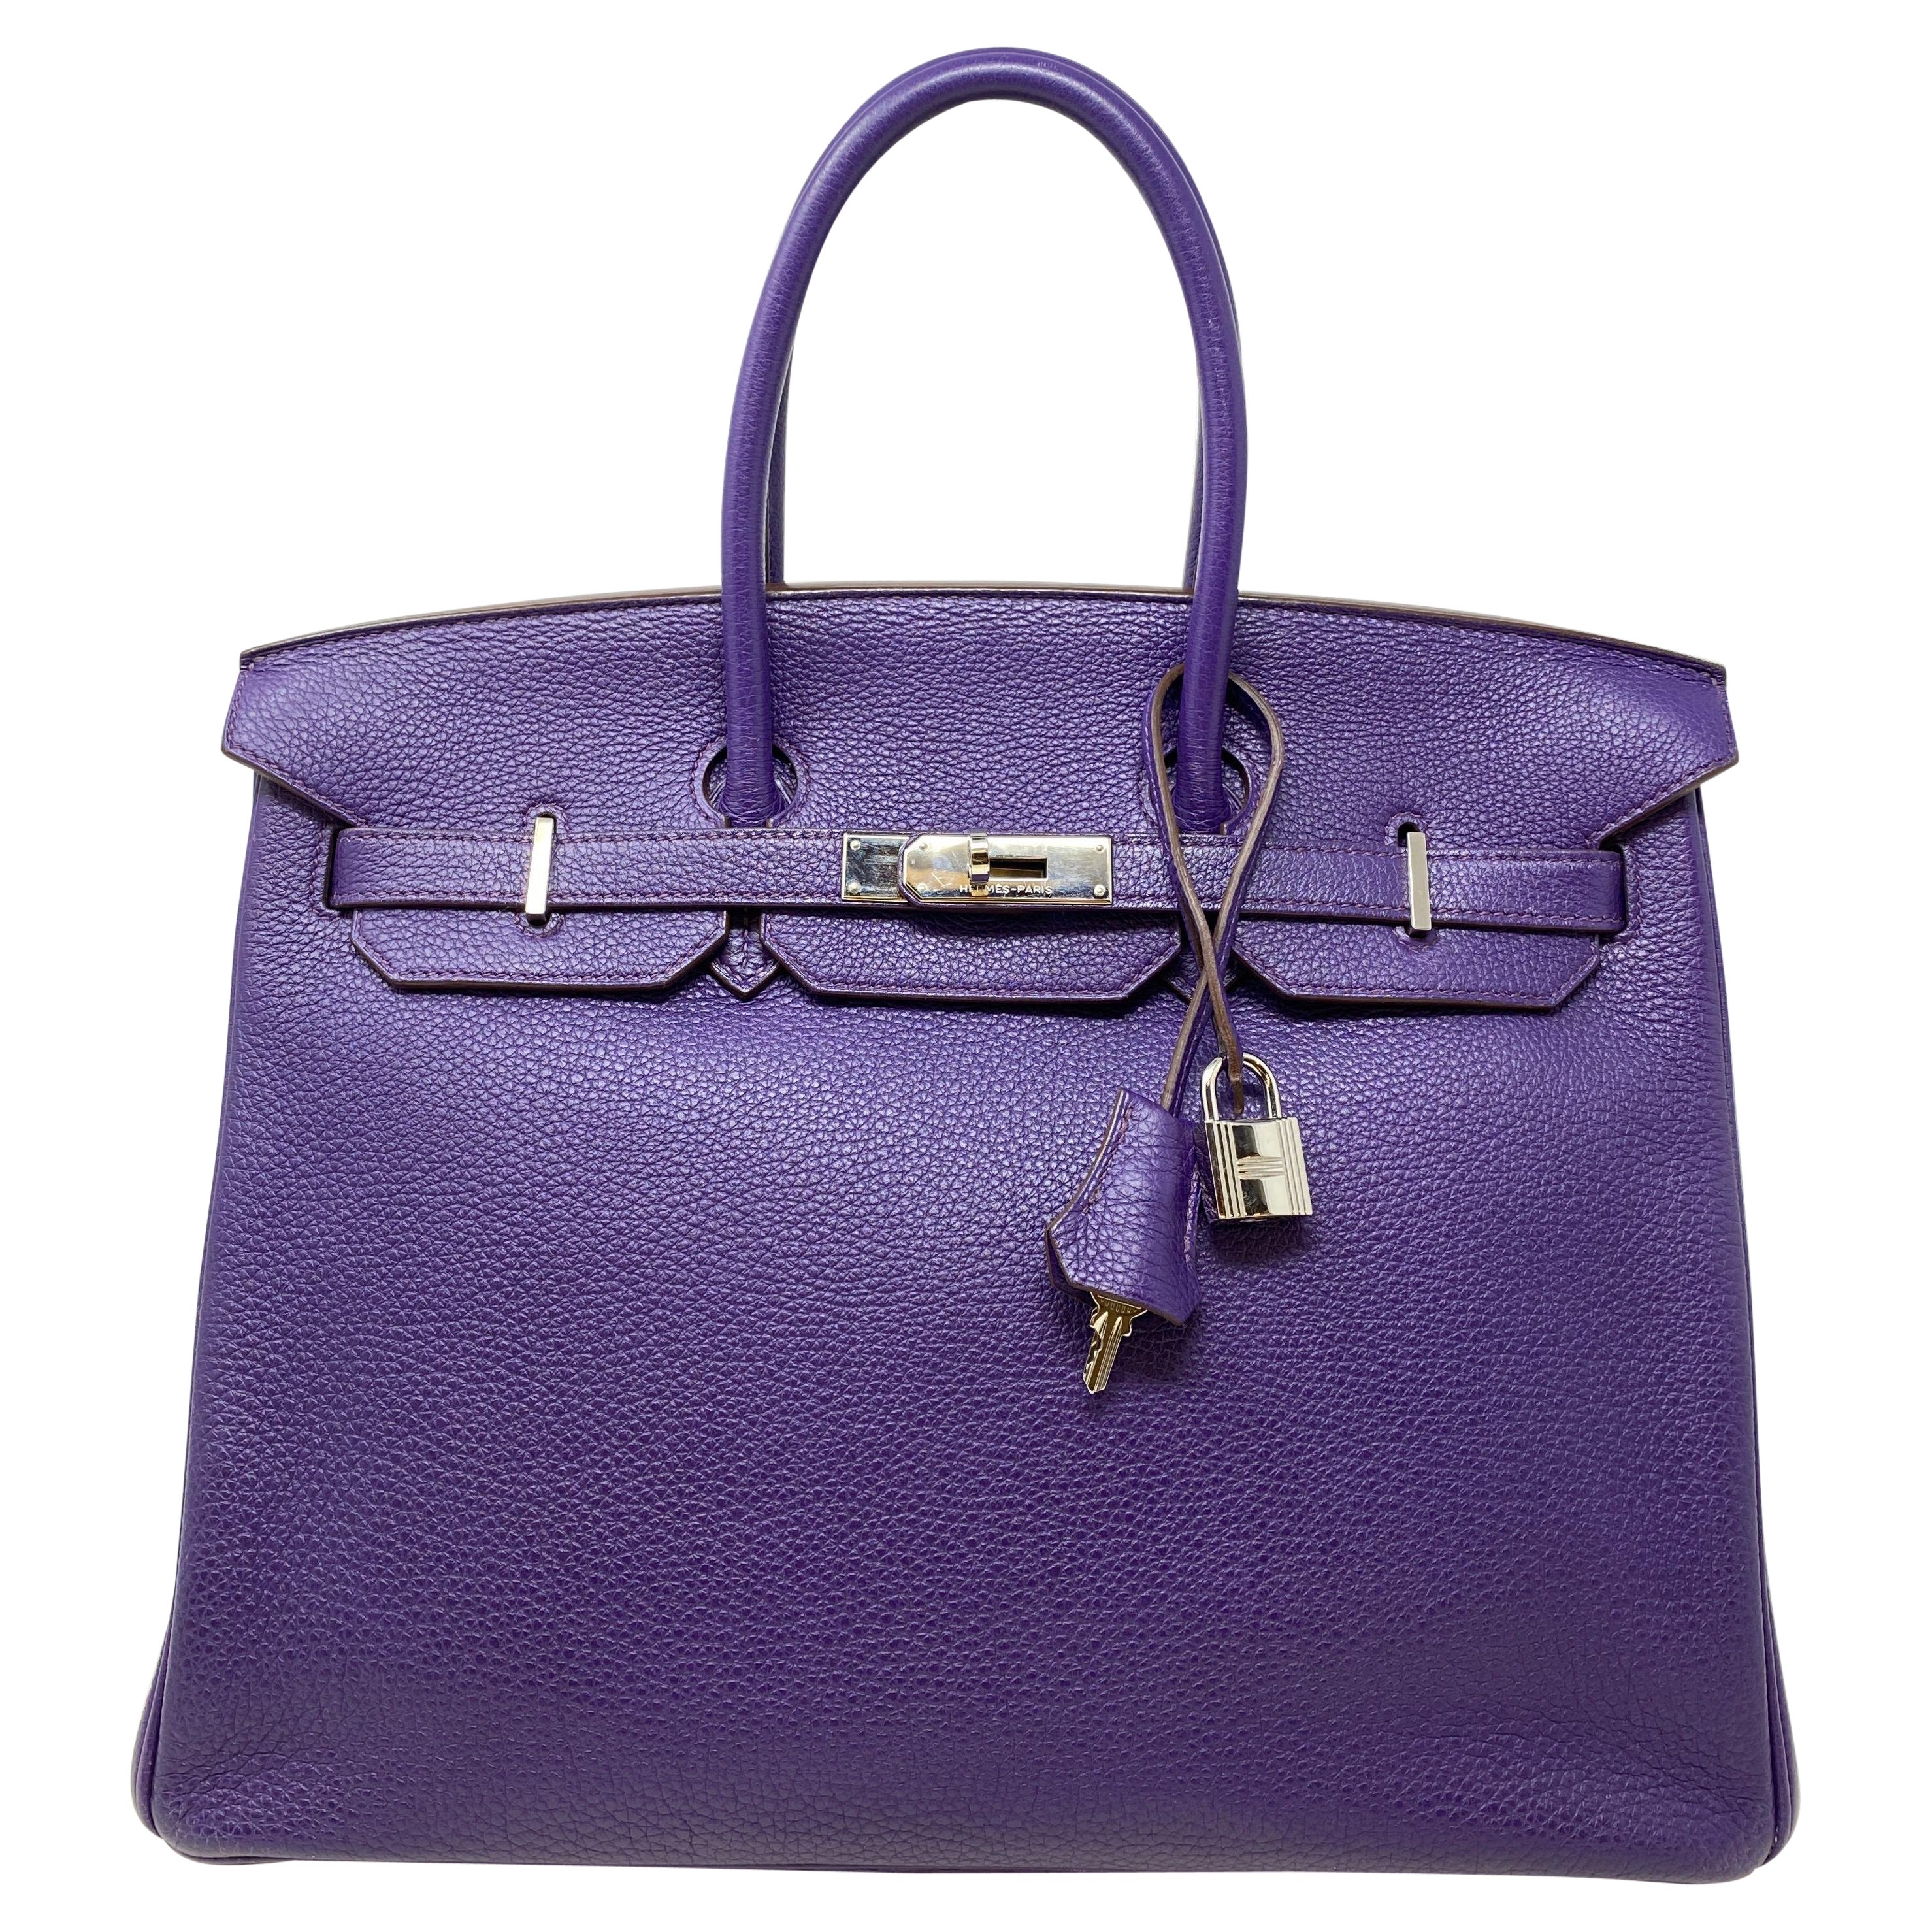 Hermès Birkin 35 Iris Bag
